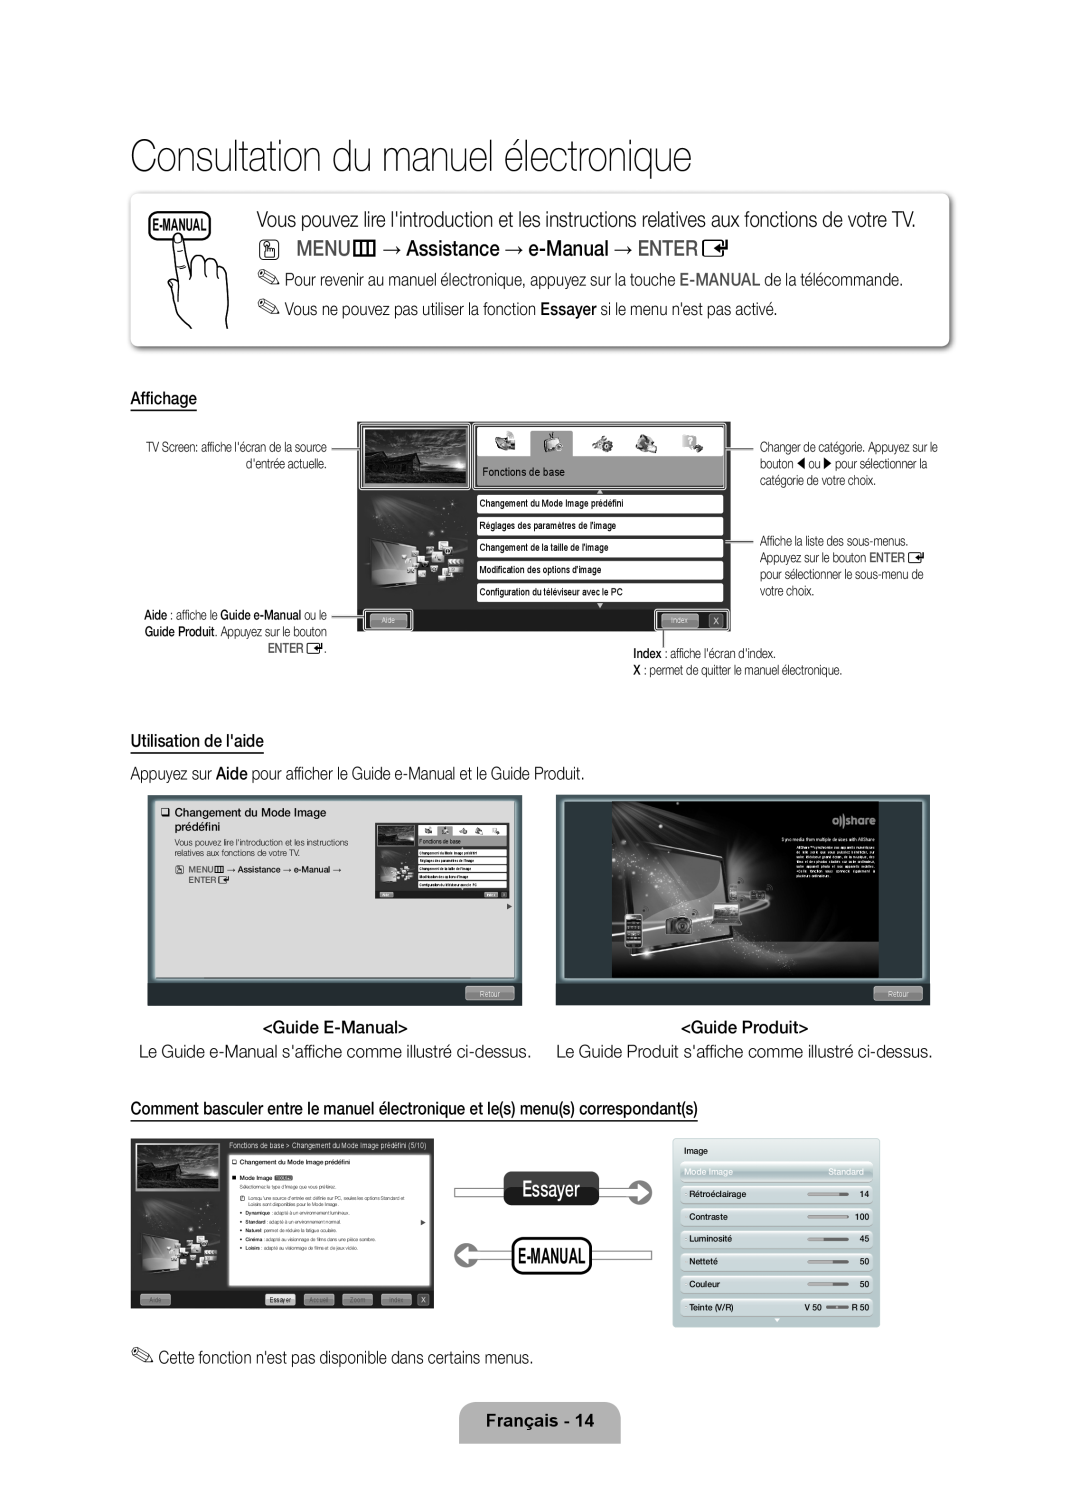 Samsung UE32D6000TPXZT Consultation du manuel électronique, O MENU m→ Assistance → e-Manual → ENTER E, Essayer, E-Manual 